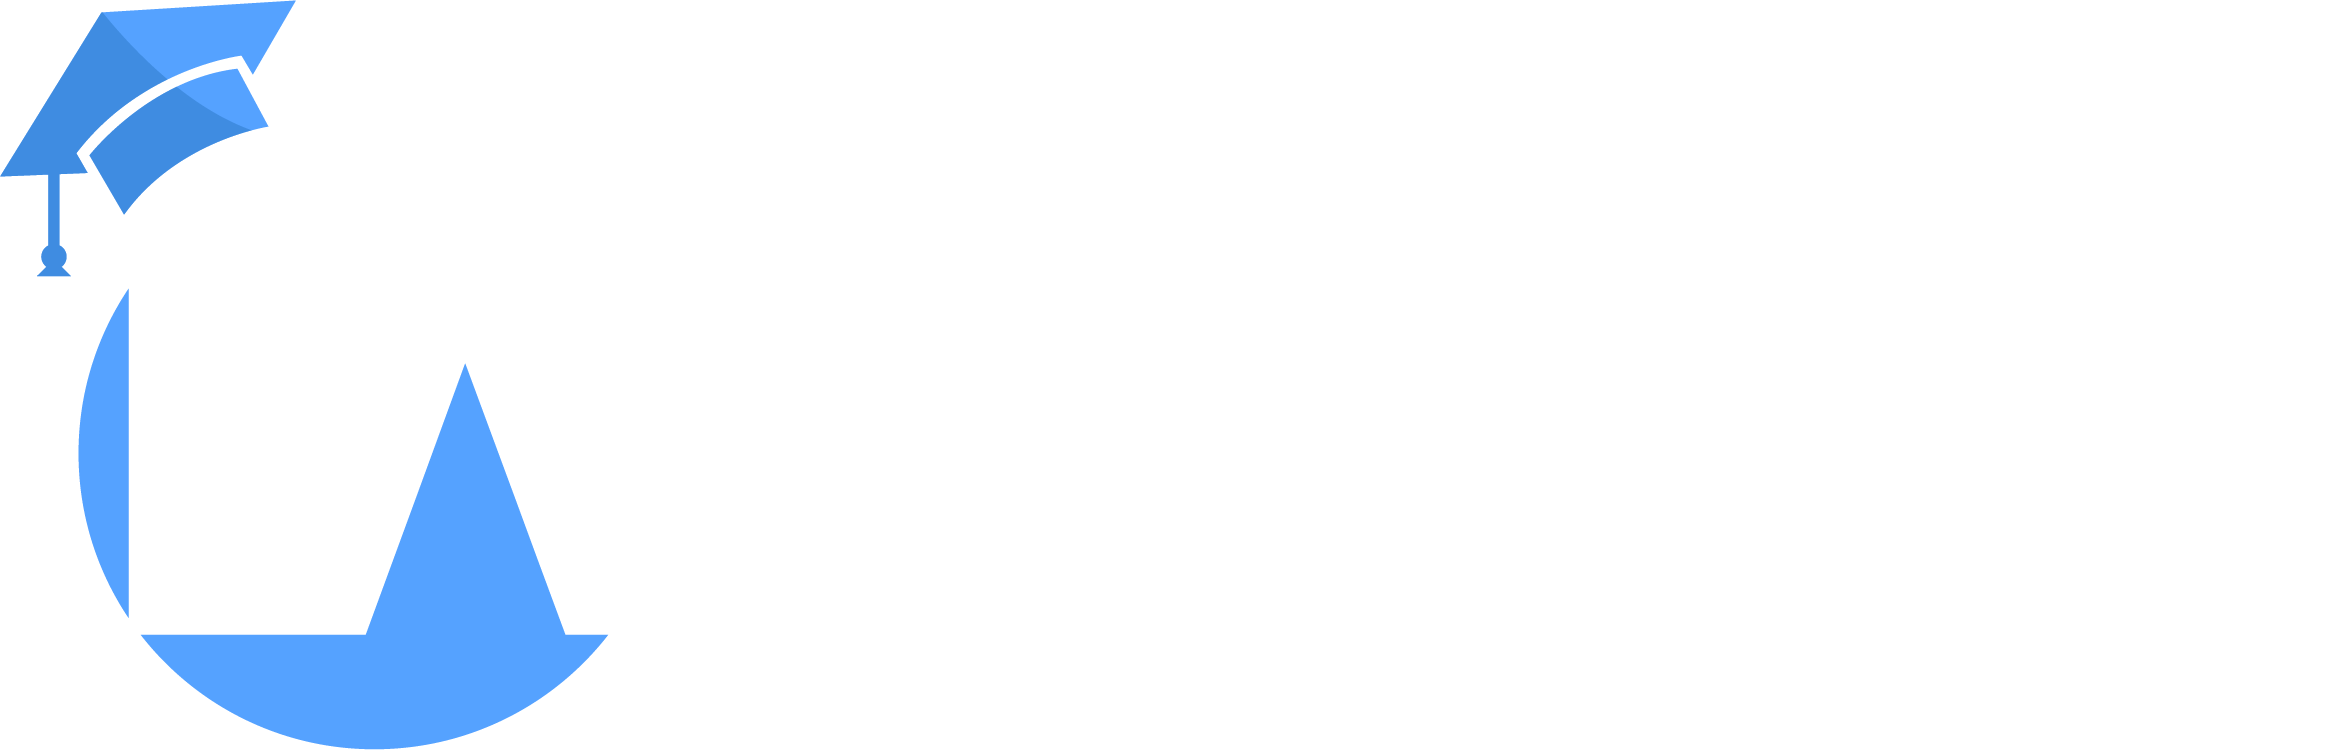 Lumen Academy